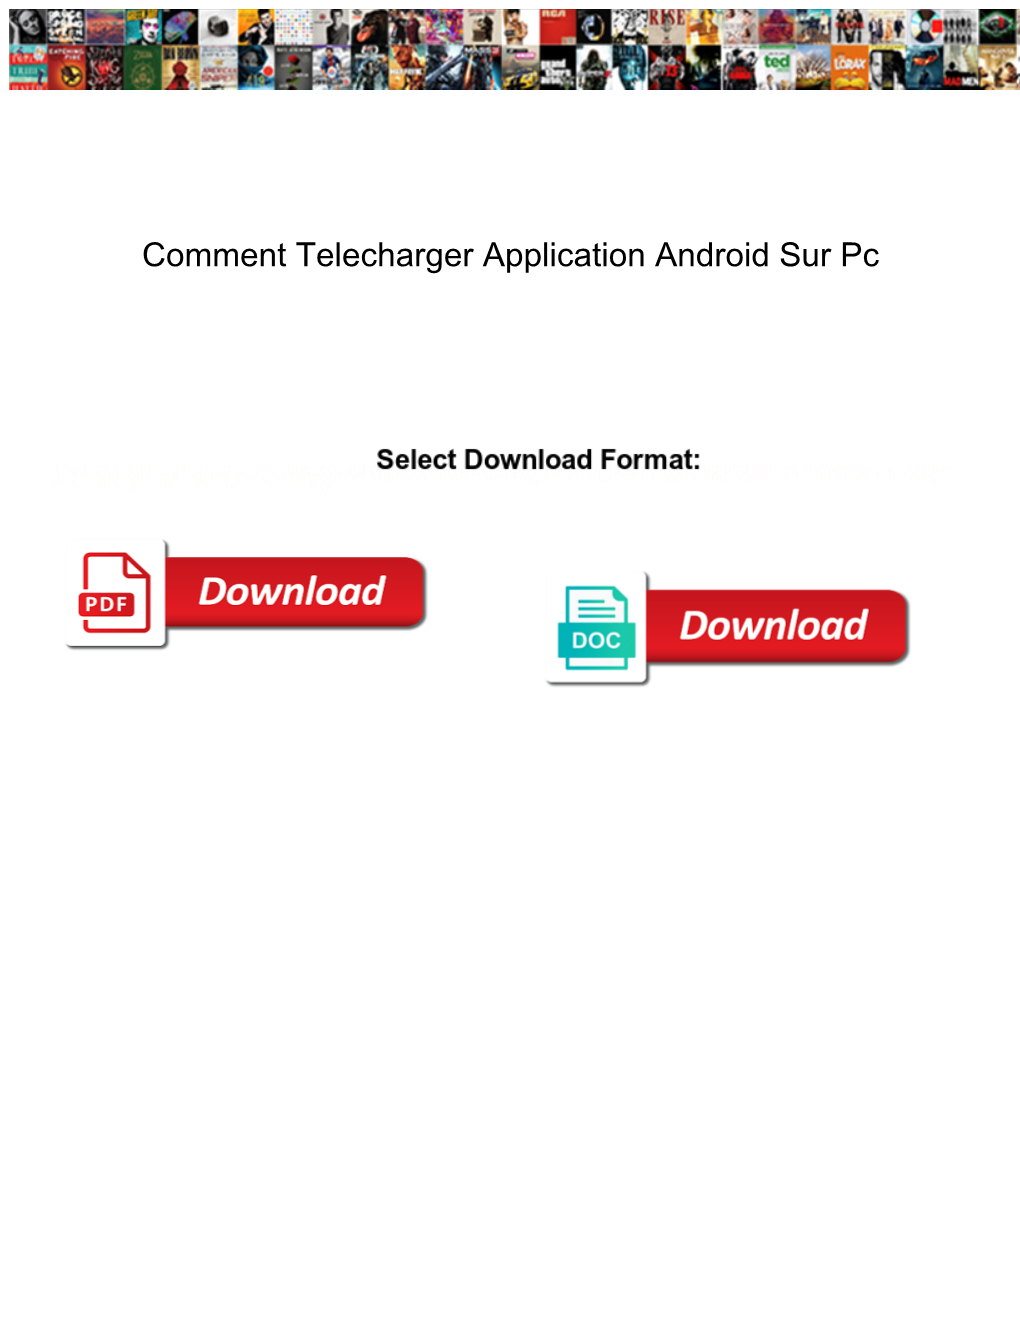 Comment Telecharger Application Android Sur Pc